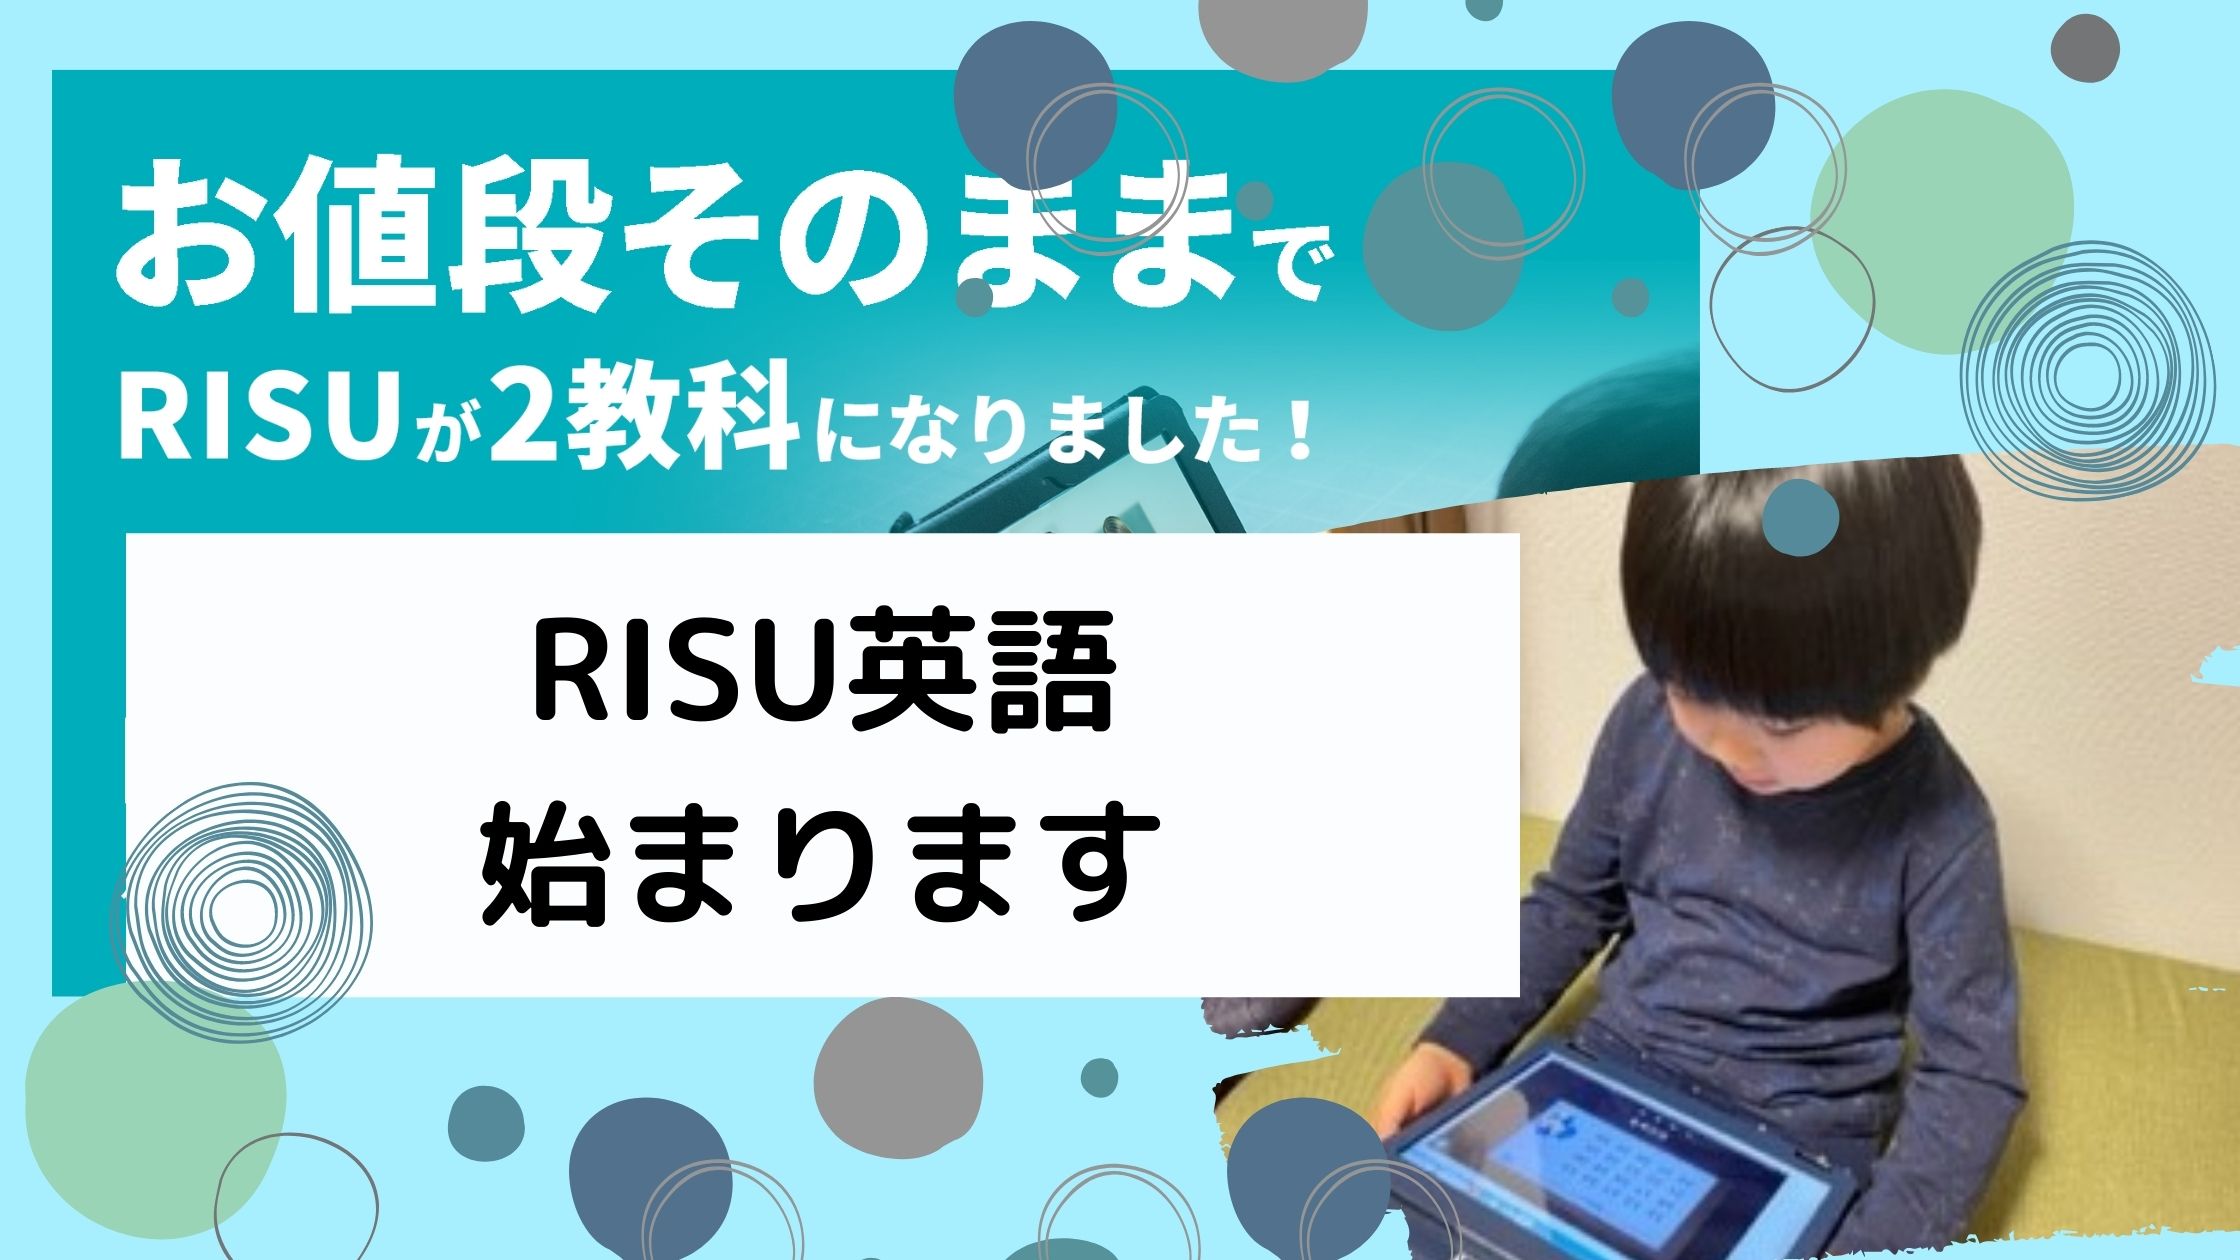 算数 risu RISU算数の口コミ!小3息子が体験してよかった点と注意点を解説